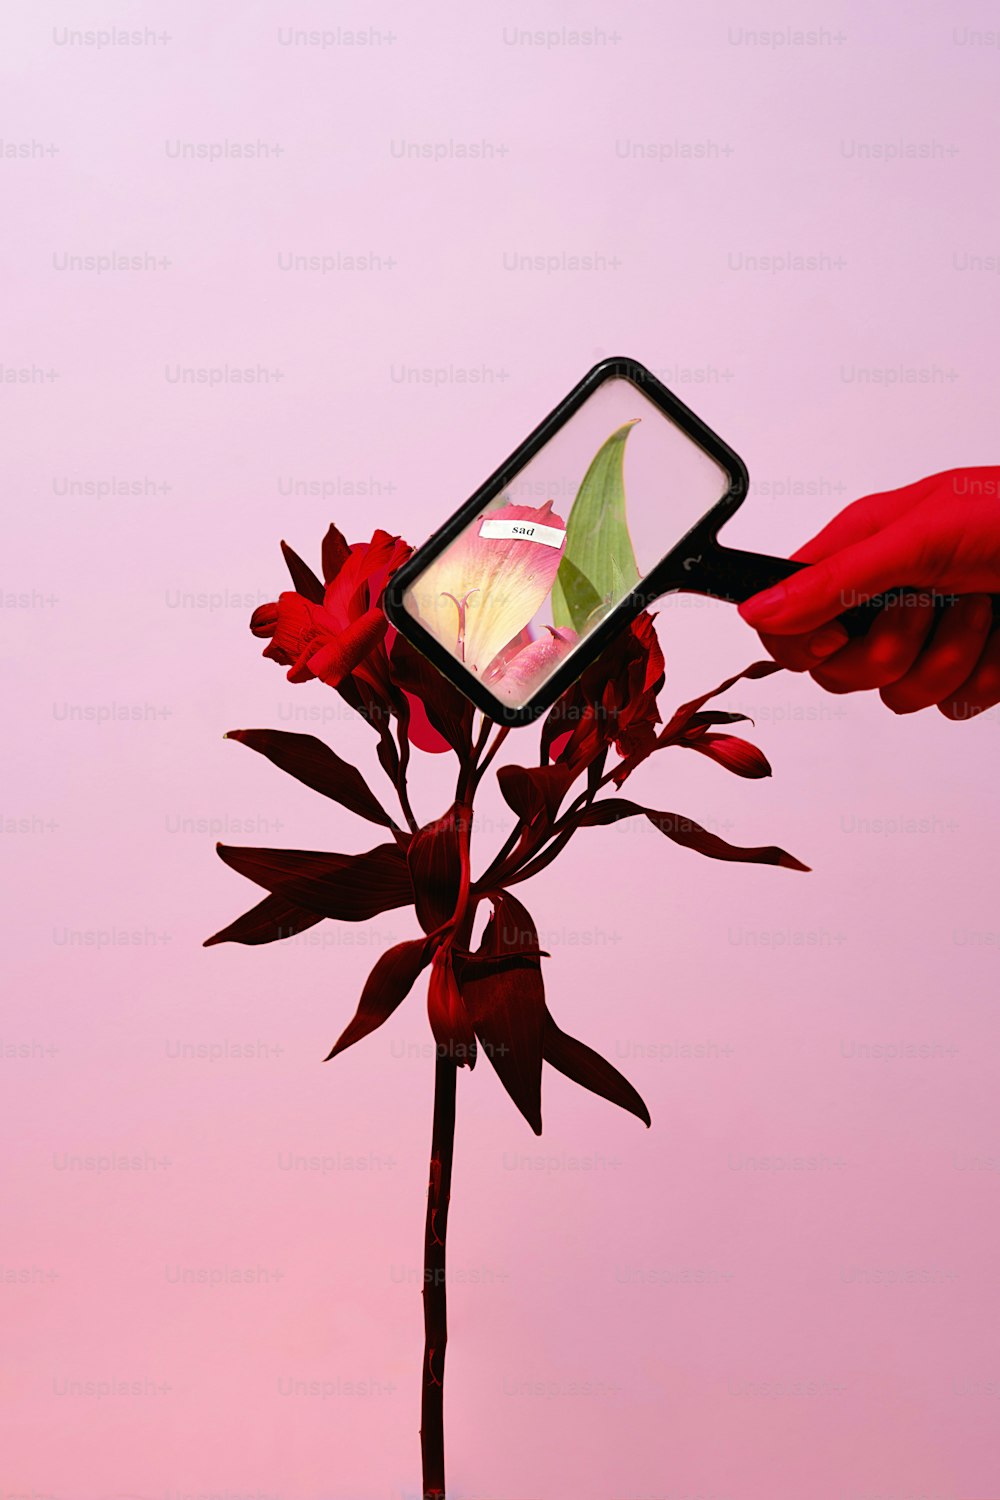 eine Person, die ein Handy an eine Blume hält